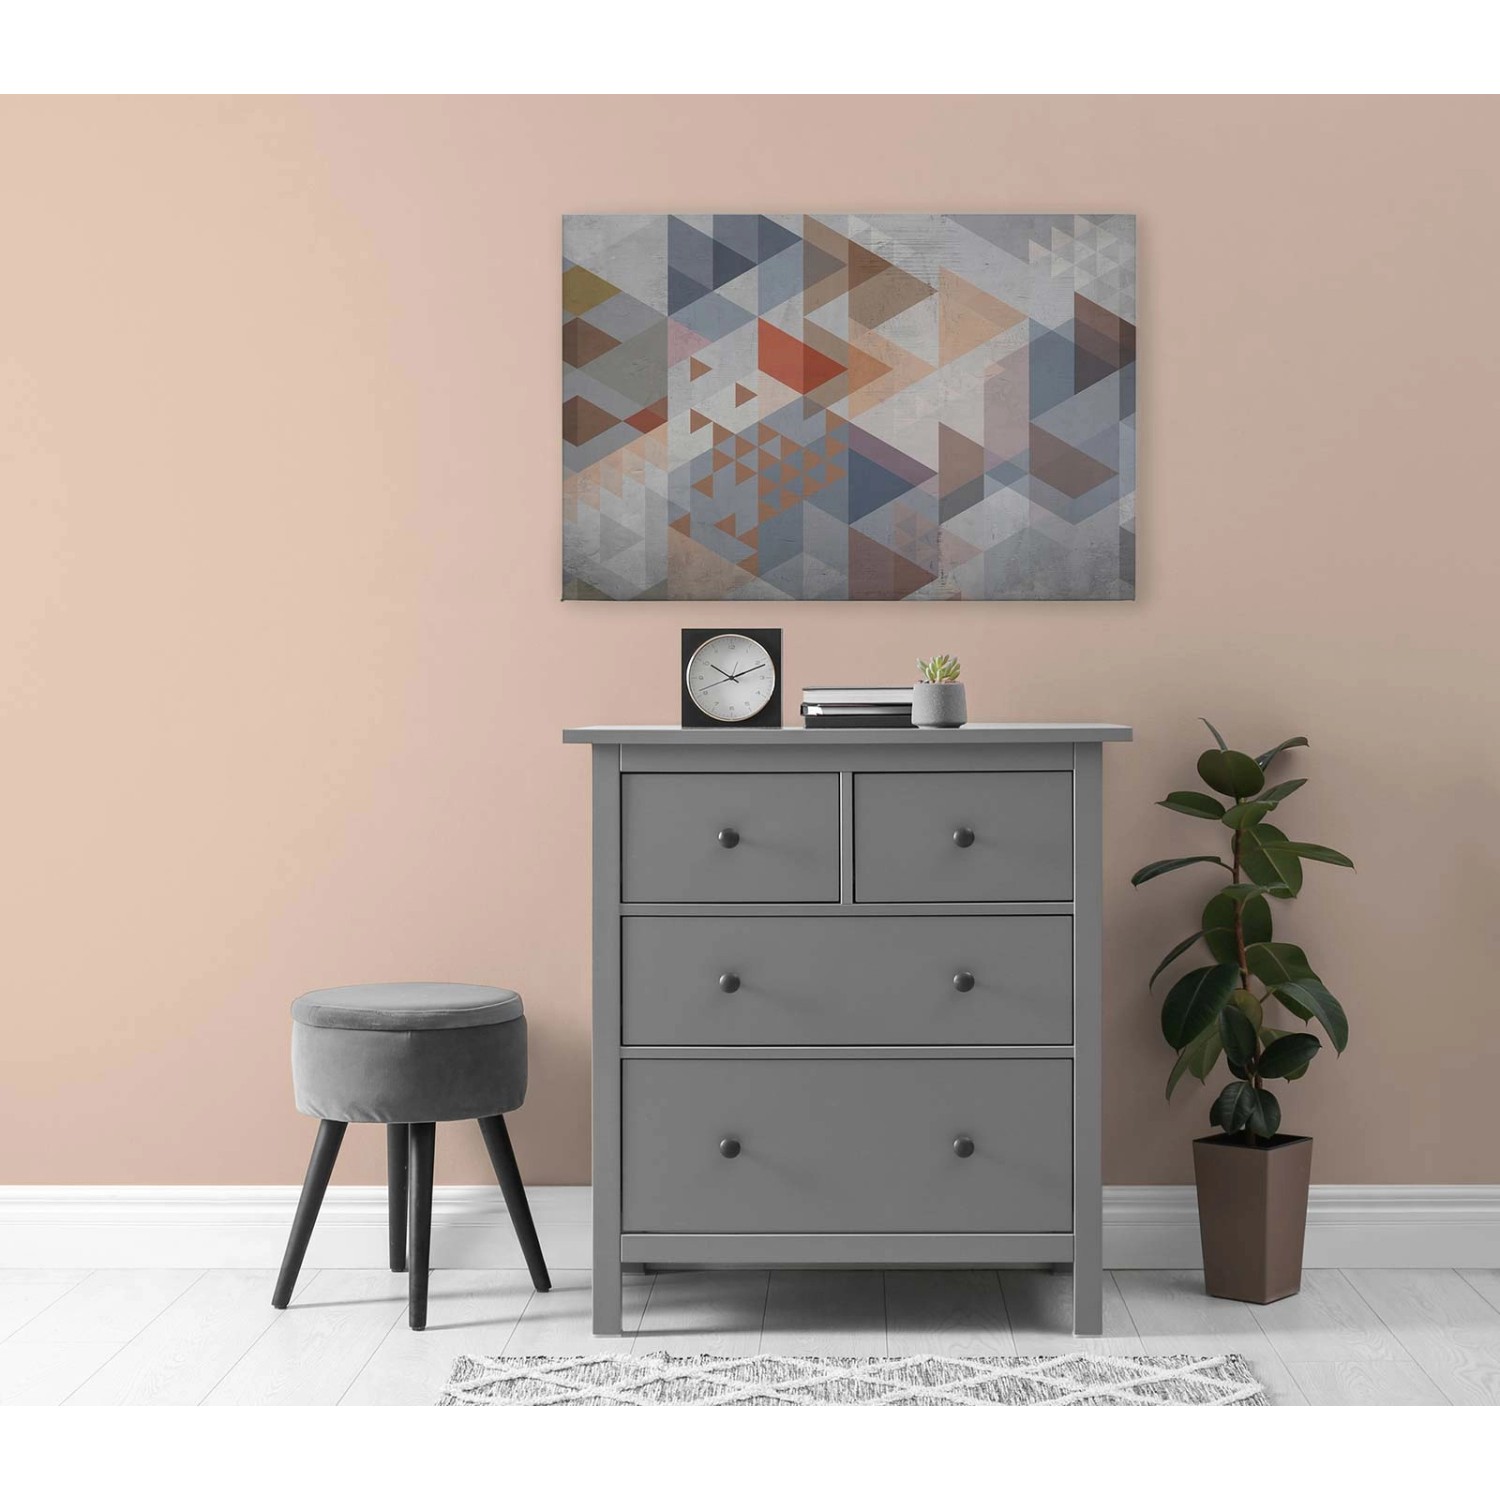 Bricoflor Leinwandbild Geometrisch Mit Dreiecken In Grau Terracotta Deko Bild Modern Grafisch Für Teenager Und Büro 120 